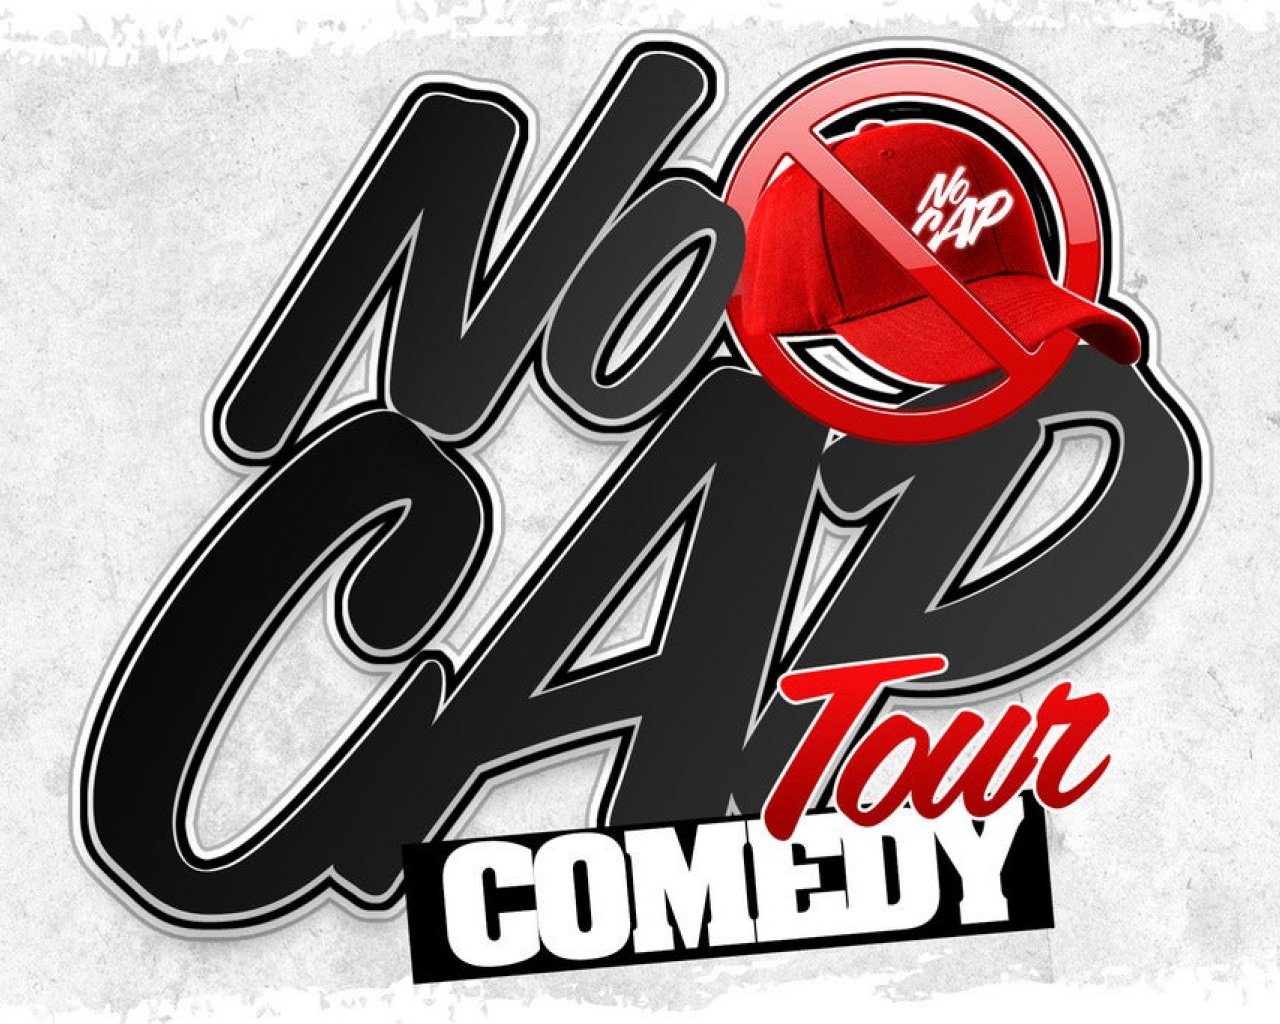 No Cap Comedy Tour